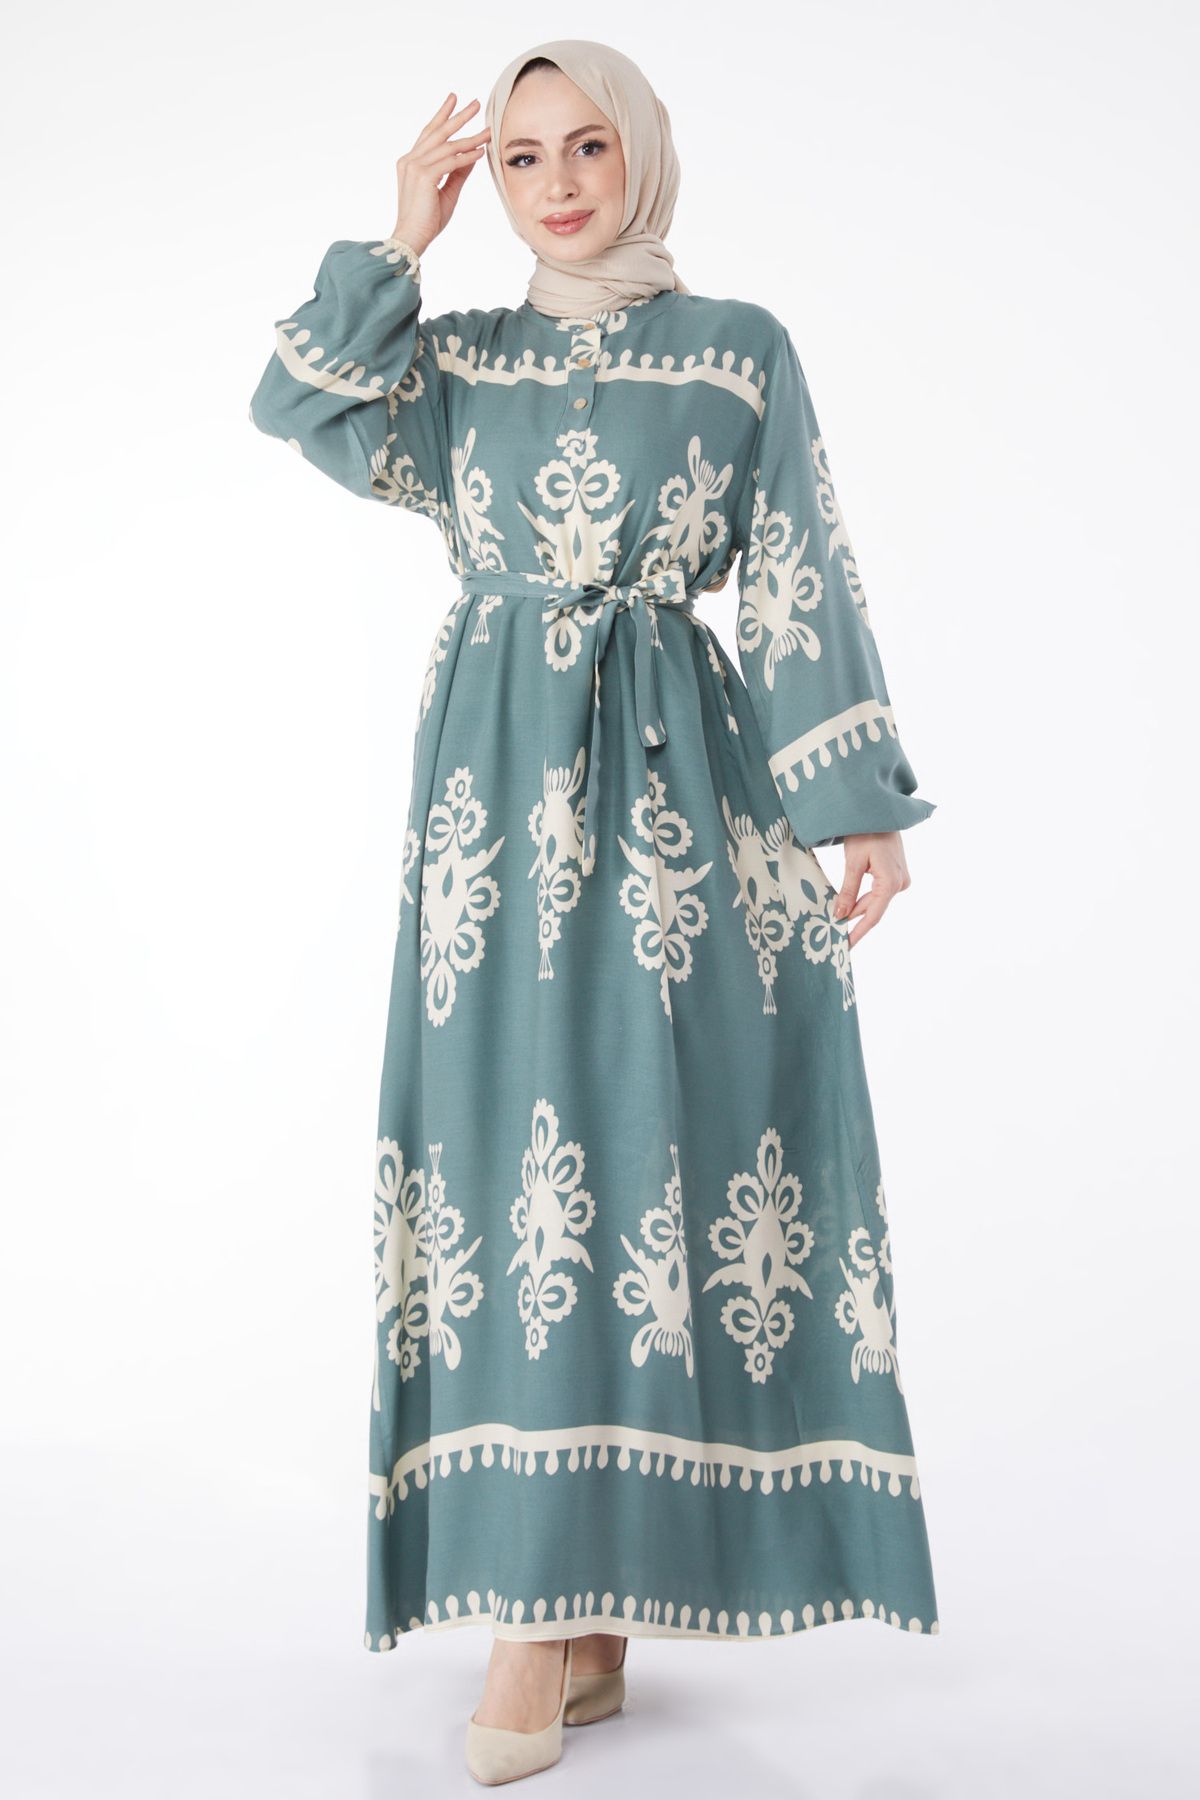 TOFİSA Düz Hakim Yaka Kadın Yeşil Desenli Renkli Elbise - 24989